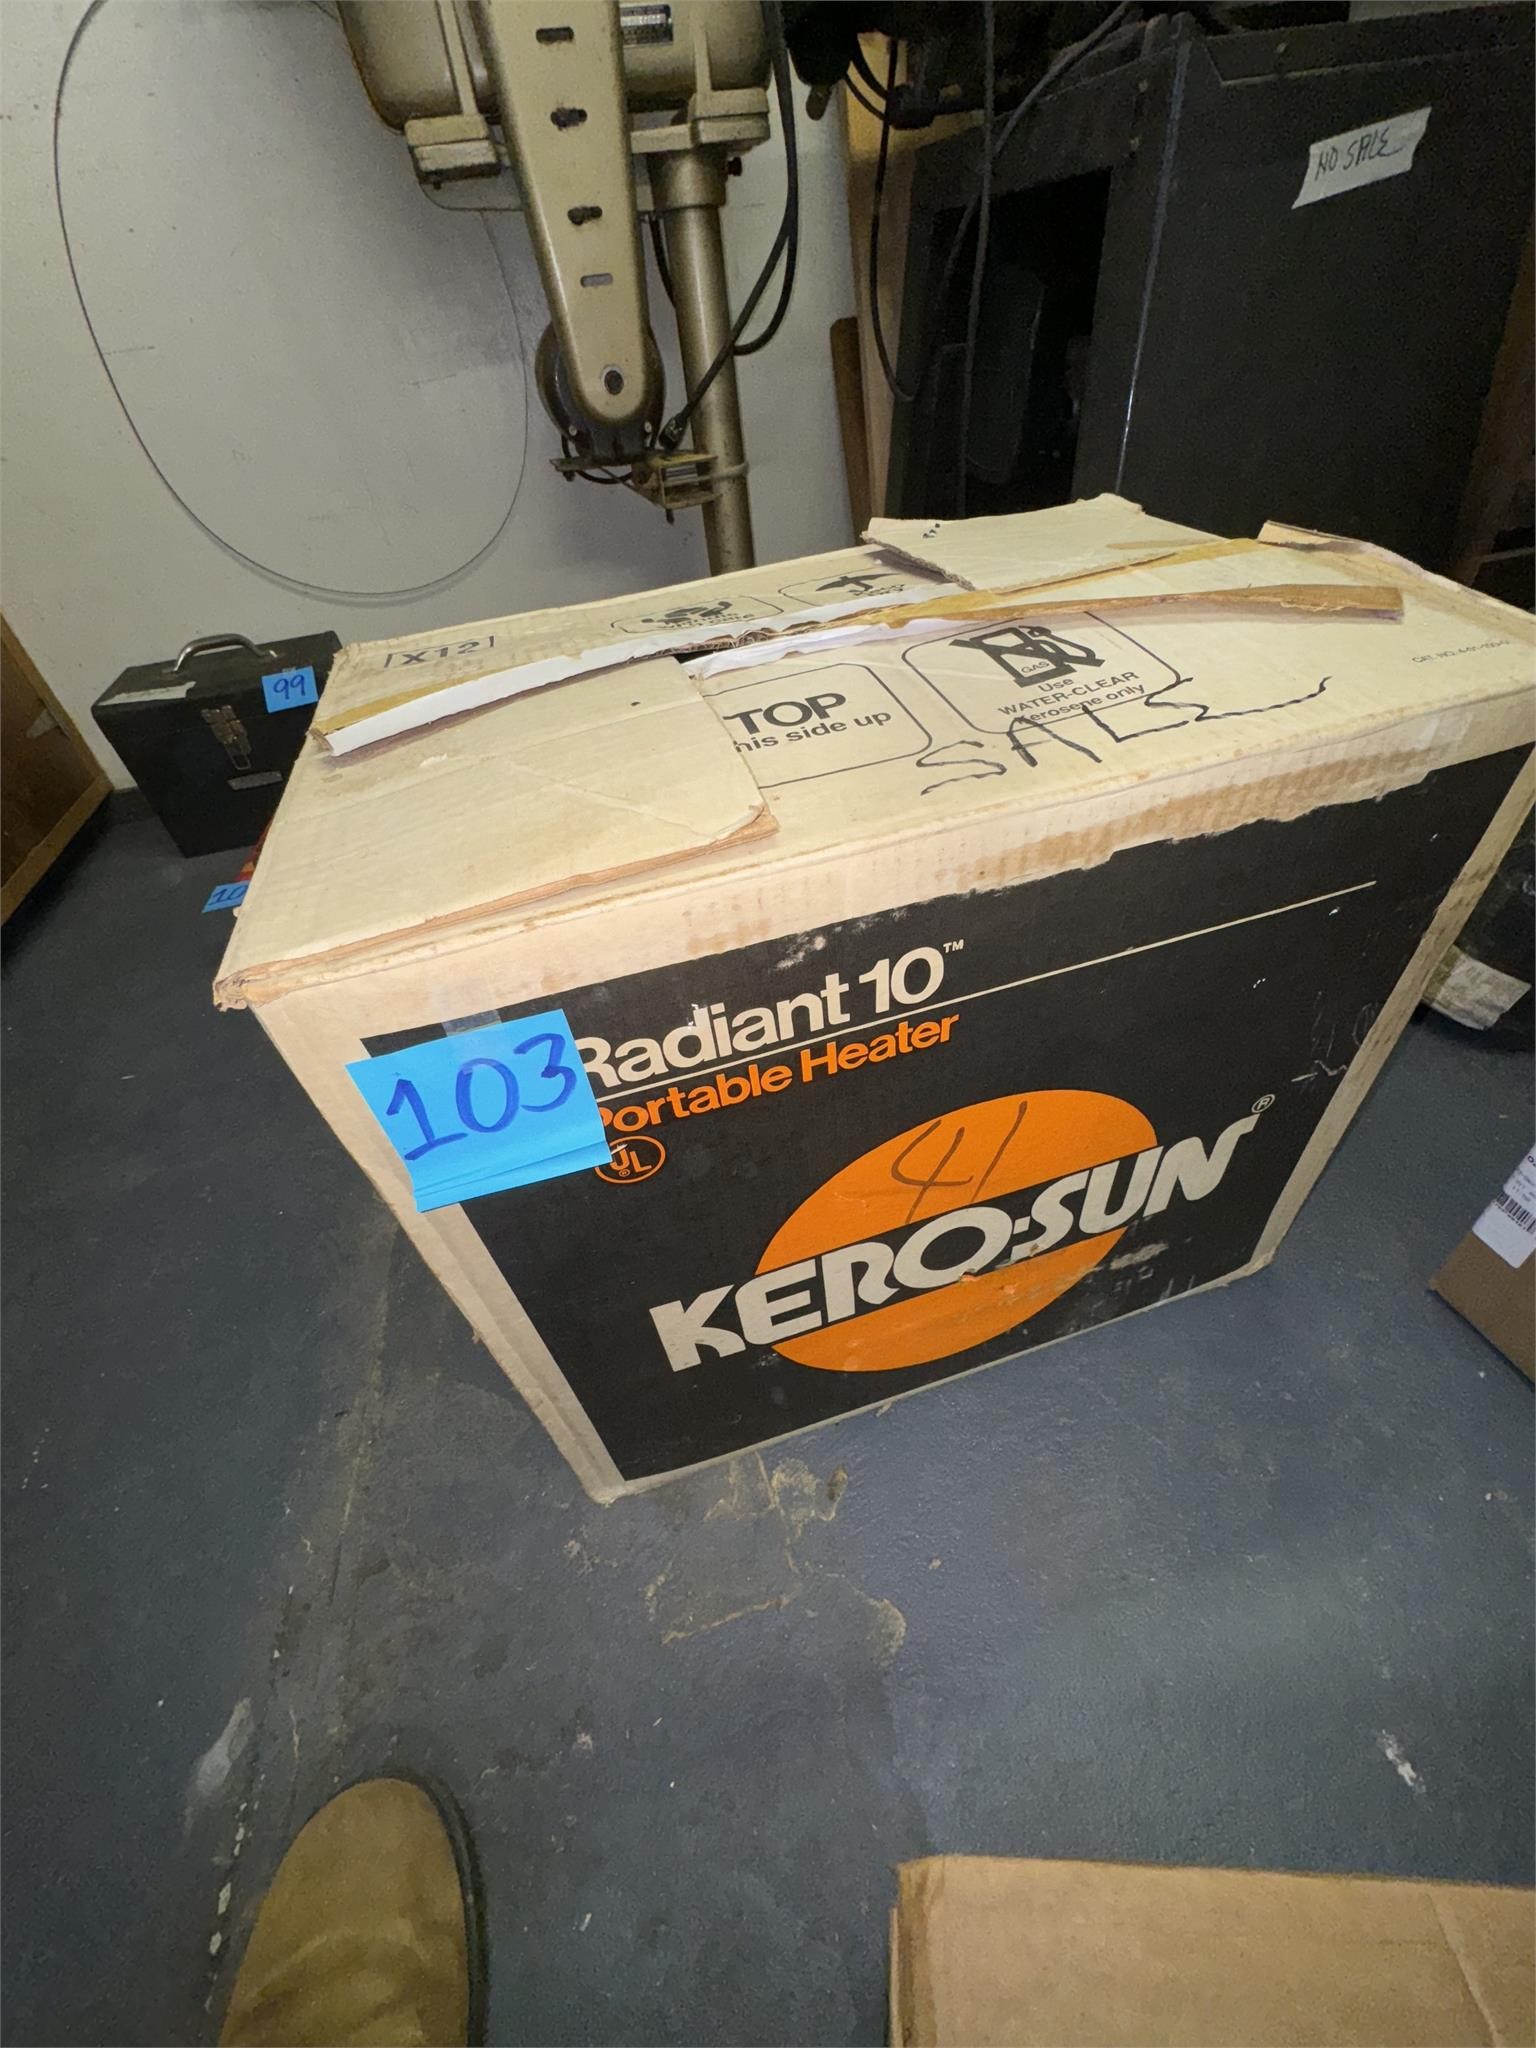 Kero-sun heater with Box